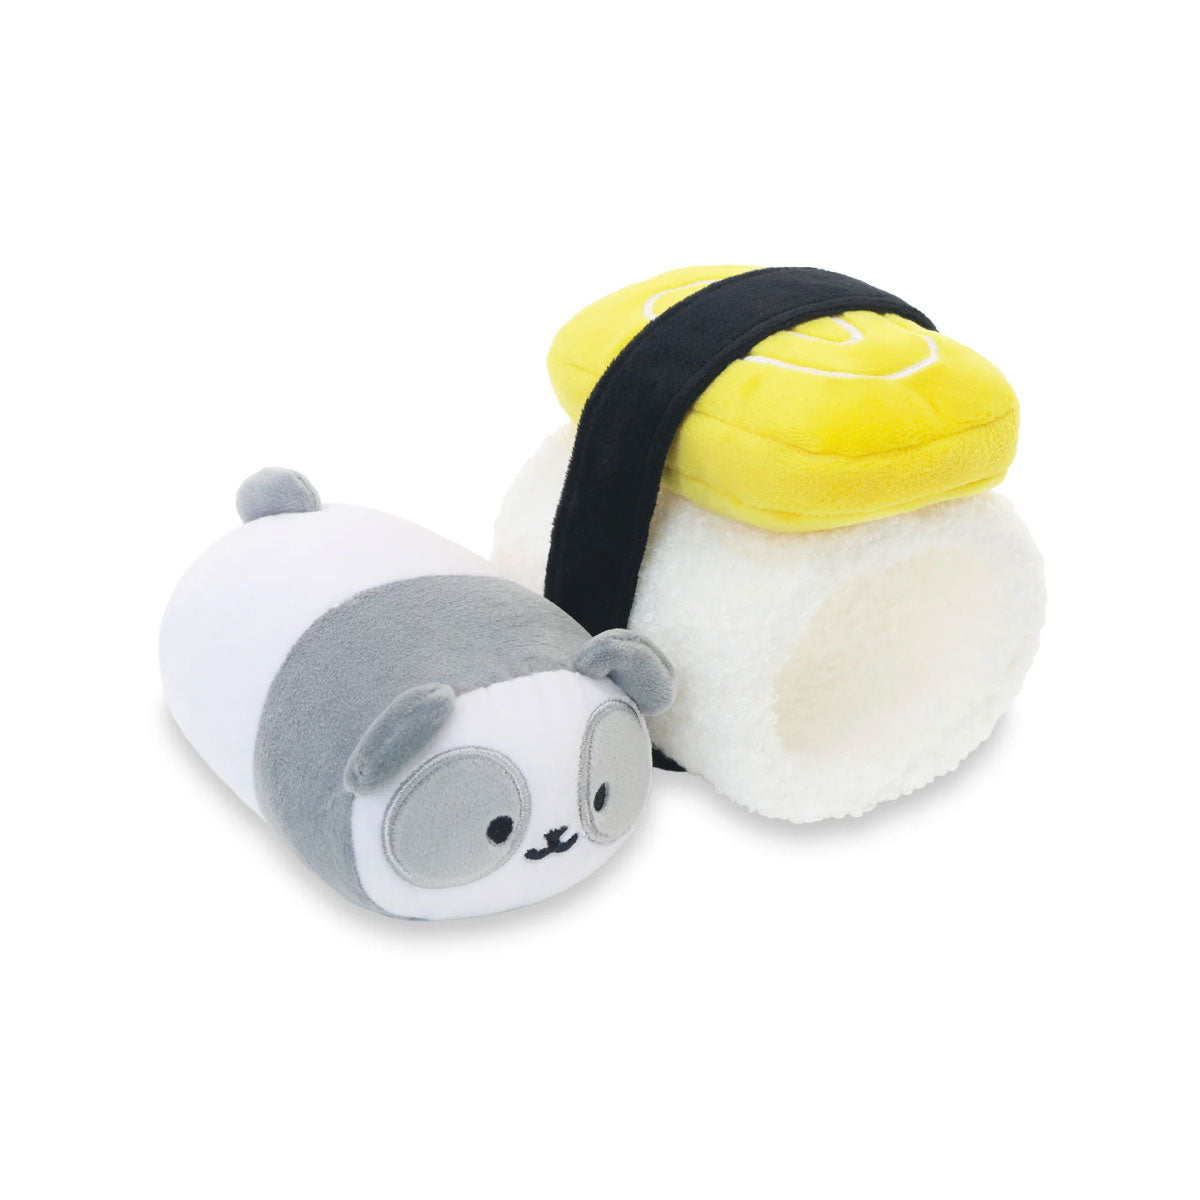 Anirollz Sushi-Rollz 6” Blanket Plush Tamago Egg Pandaroll